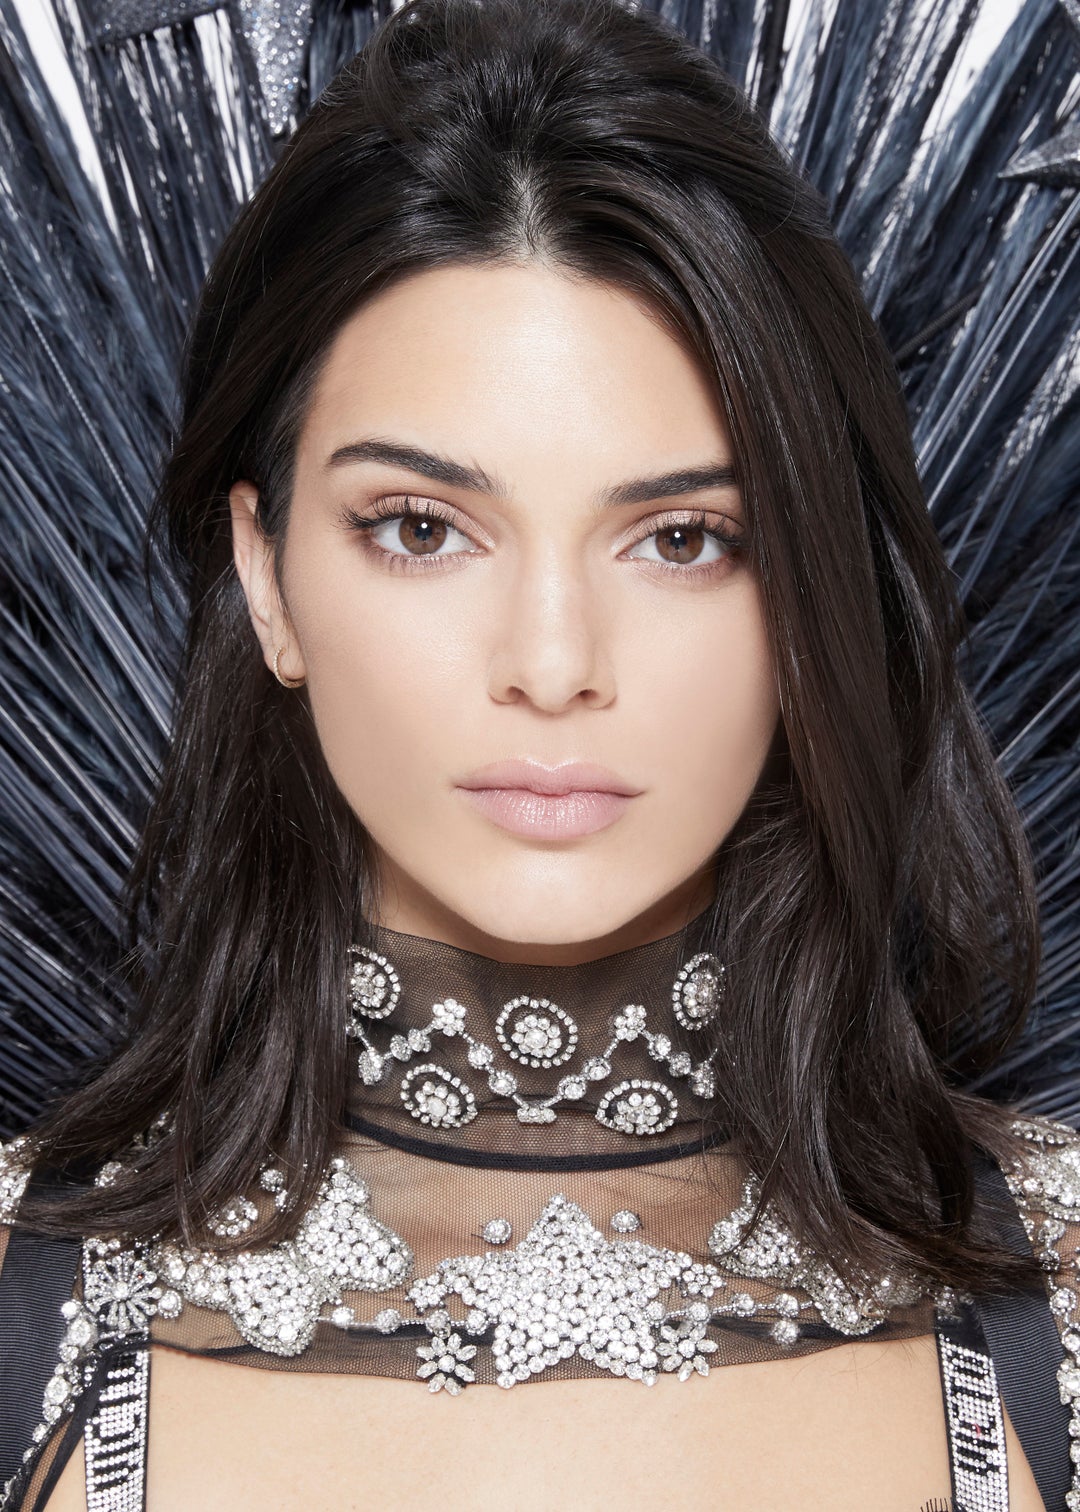 Kendall Jenner Women Model Face Brunette Dark Hair 1080x1512